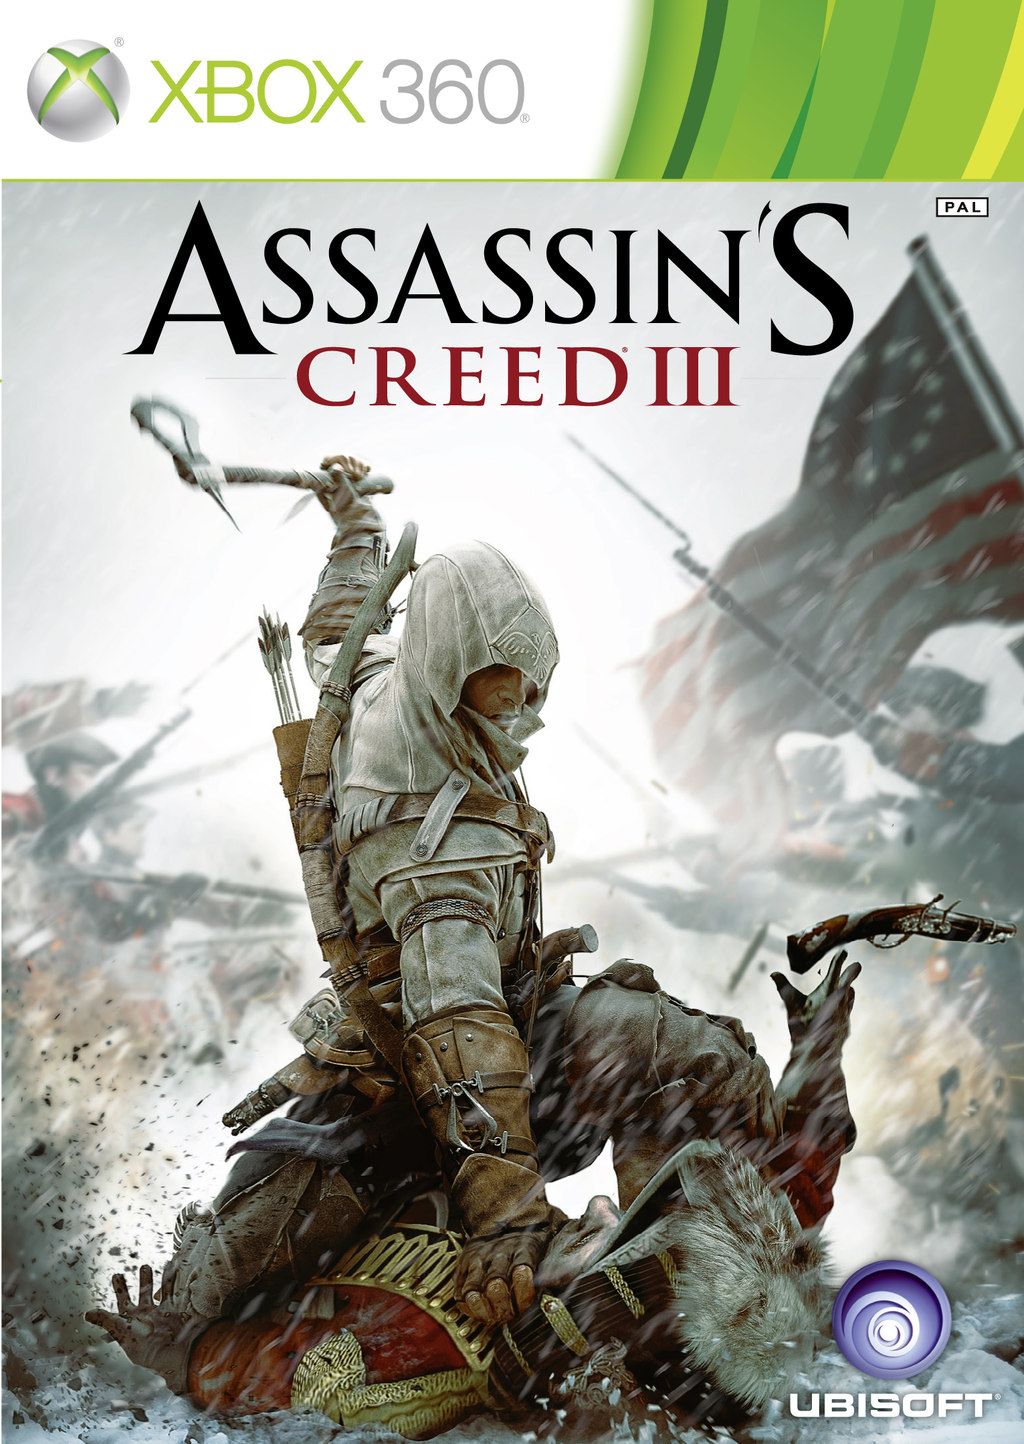 Assassin's Creed III ambientato durante la Rivoluzione Americana